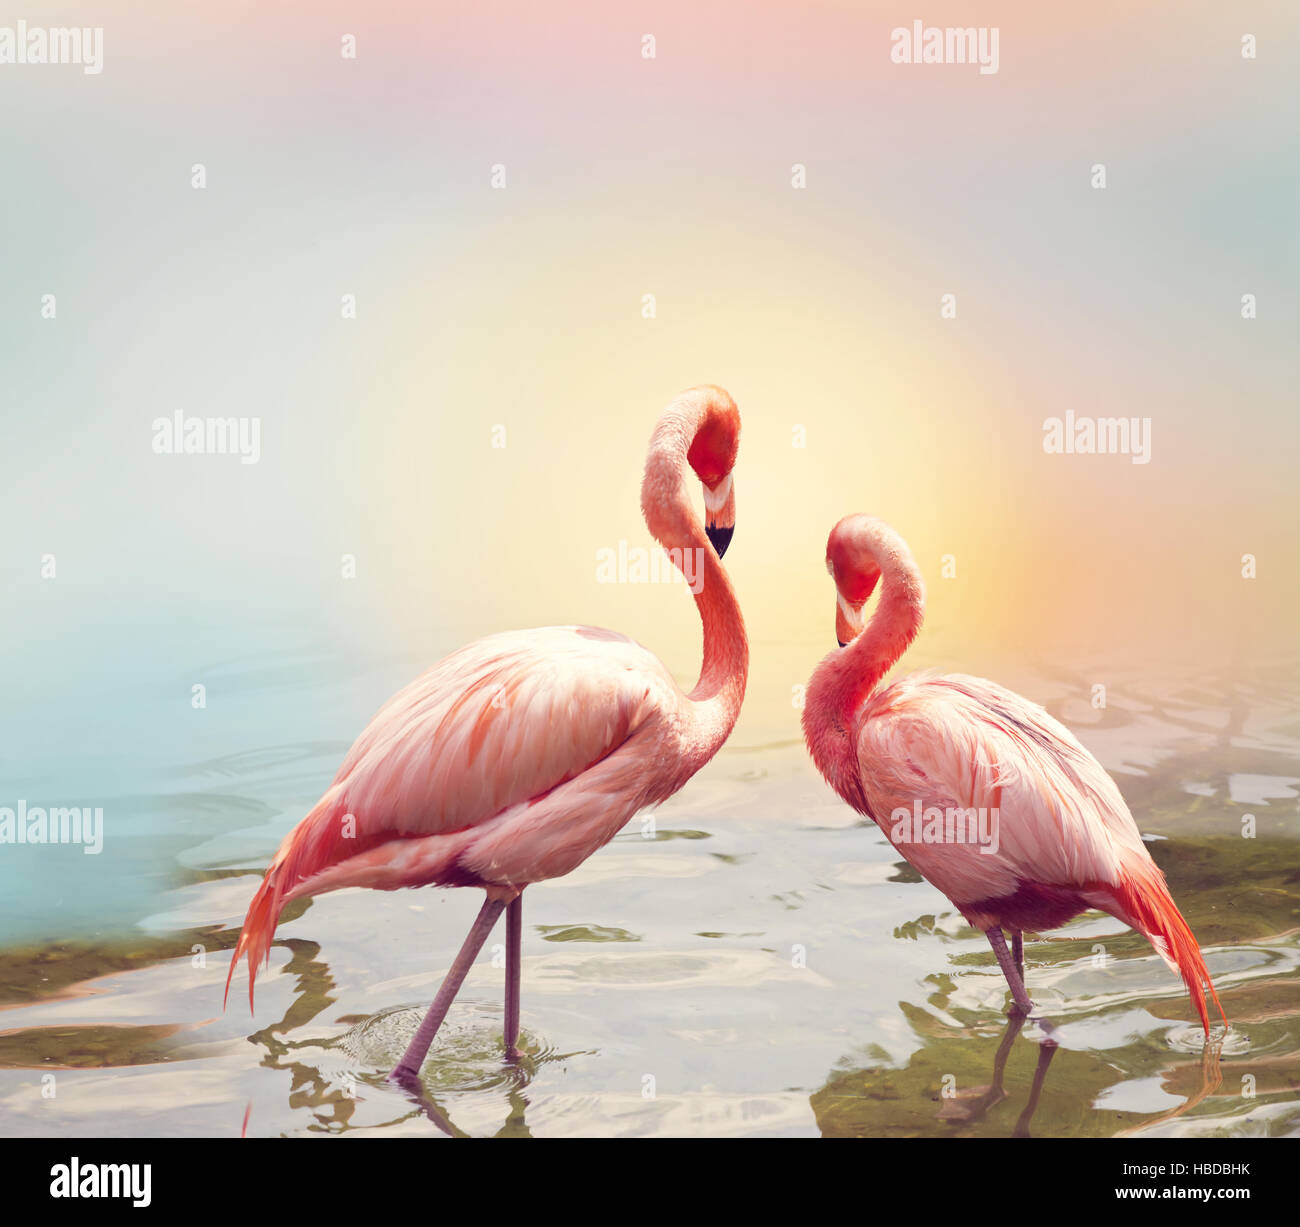 Two Flamingos near water Stock Photo